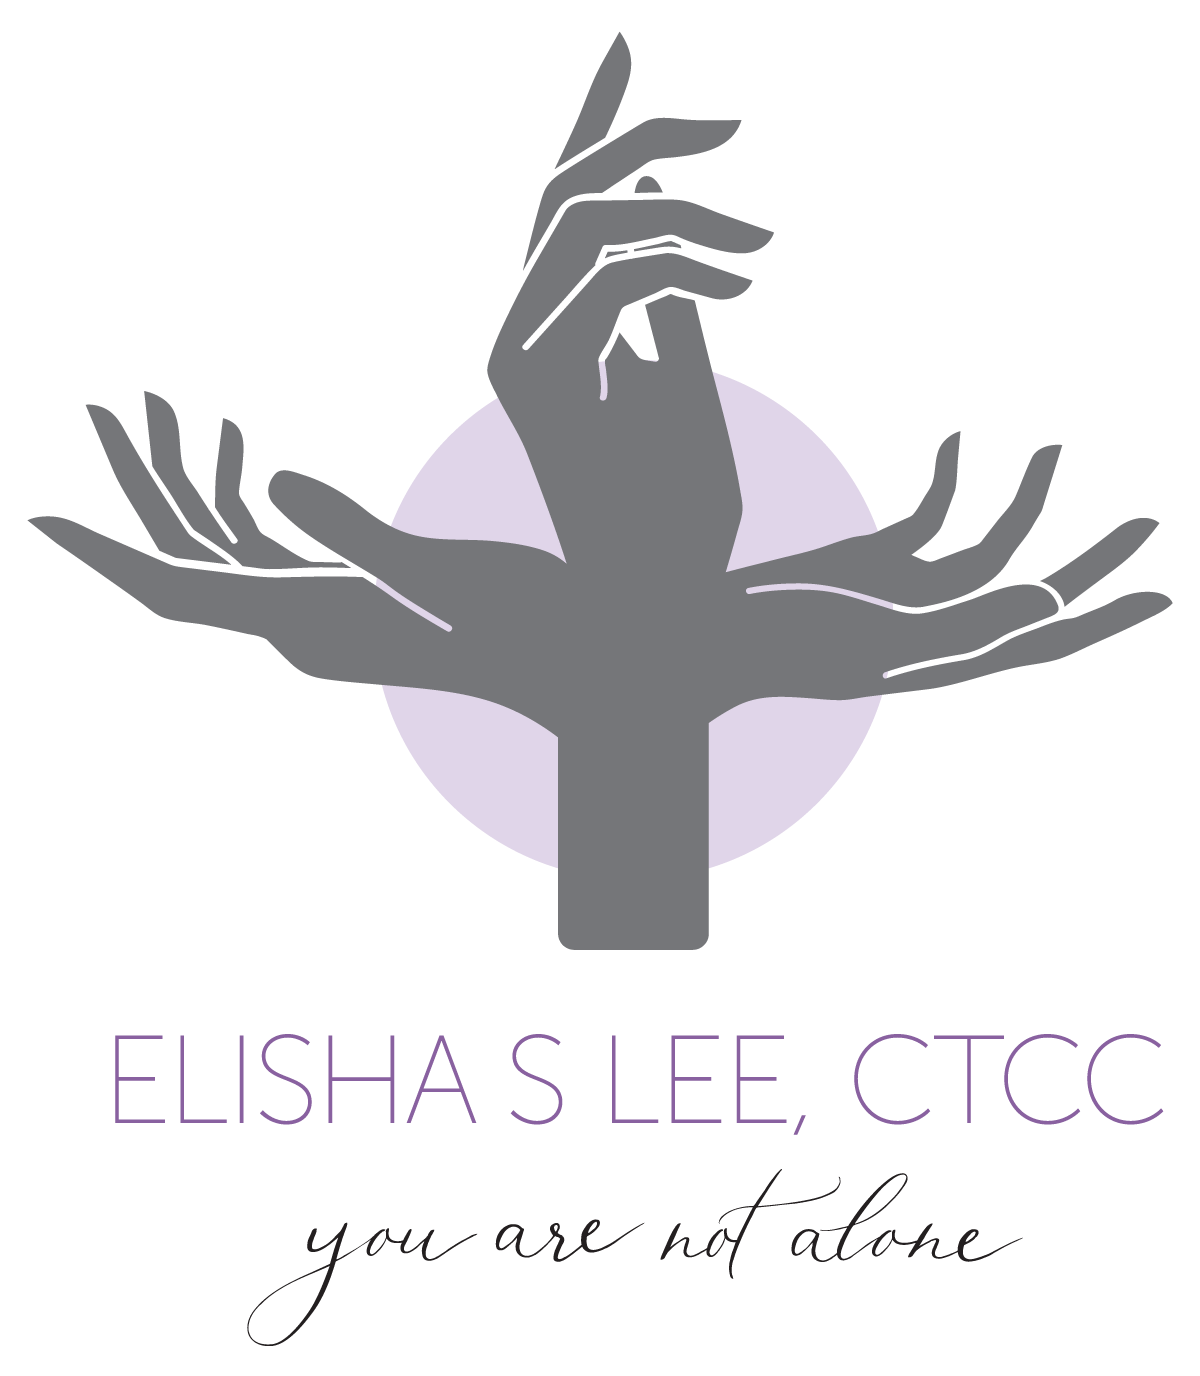 Elisha Lee